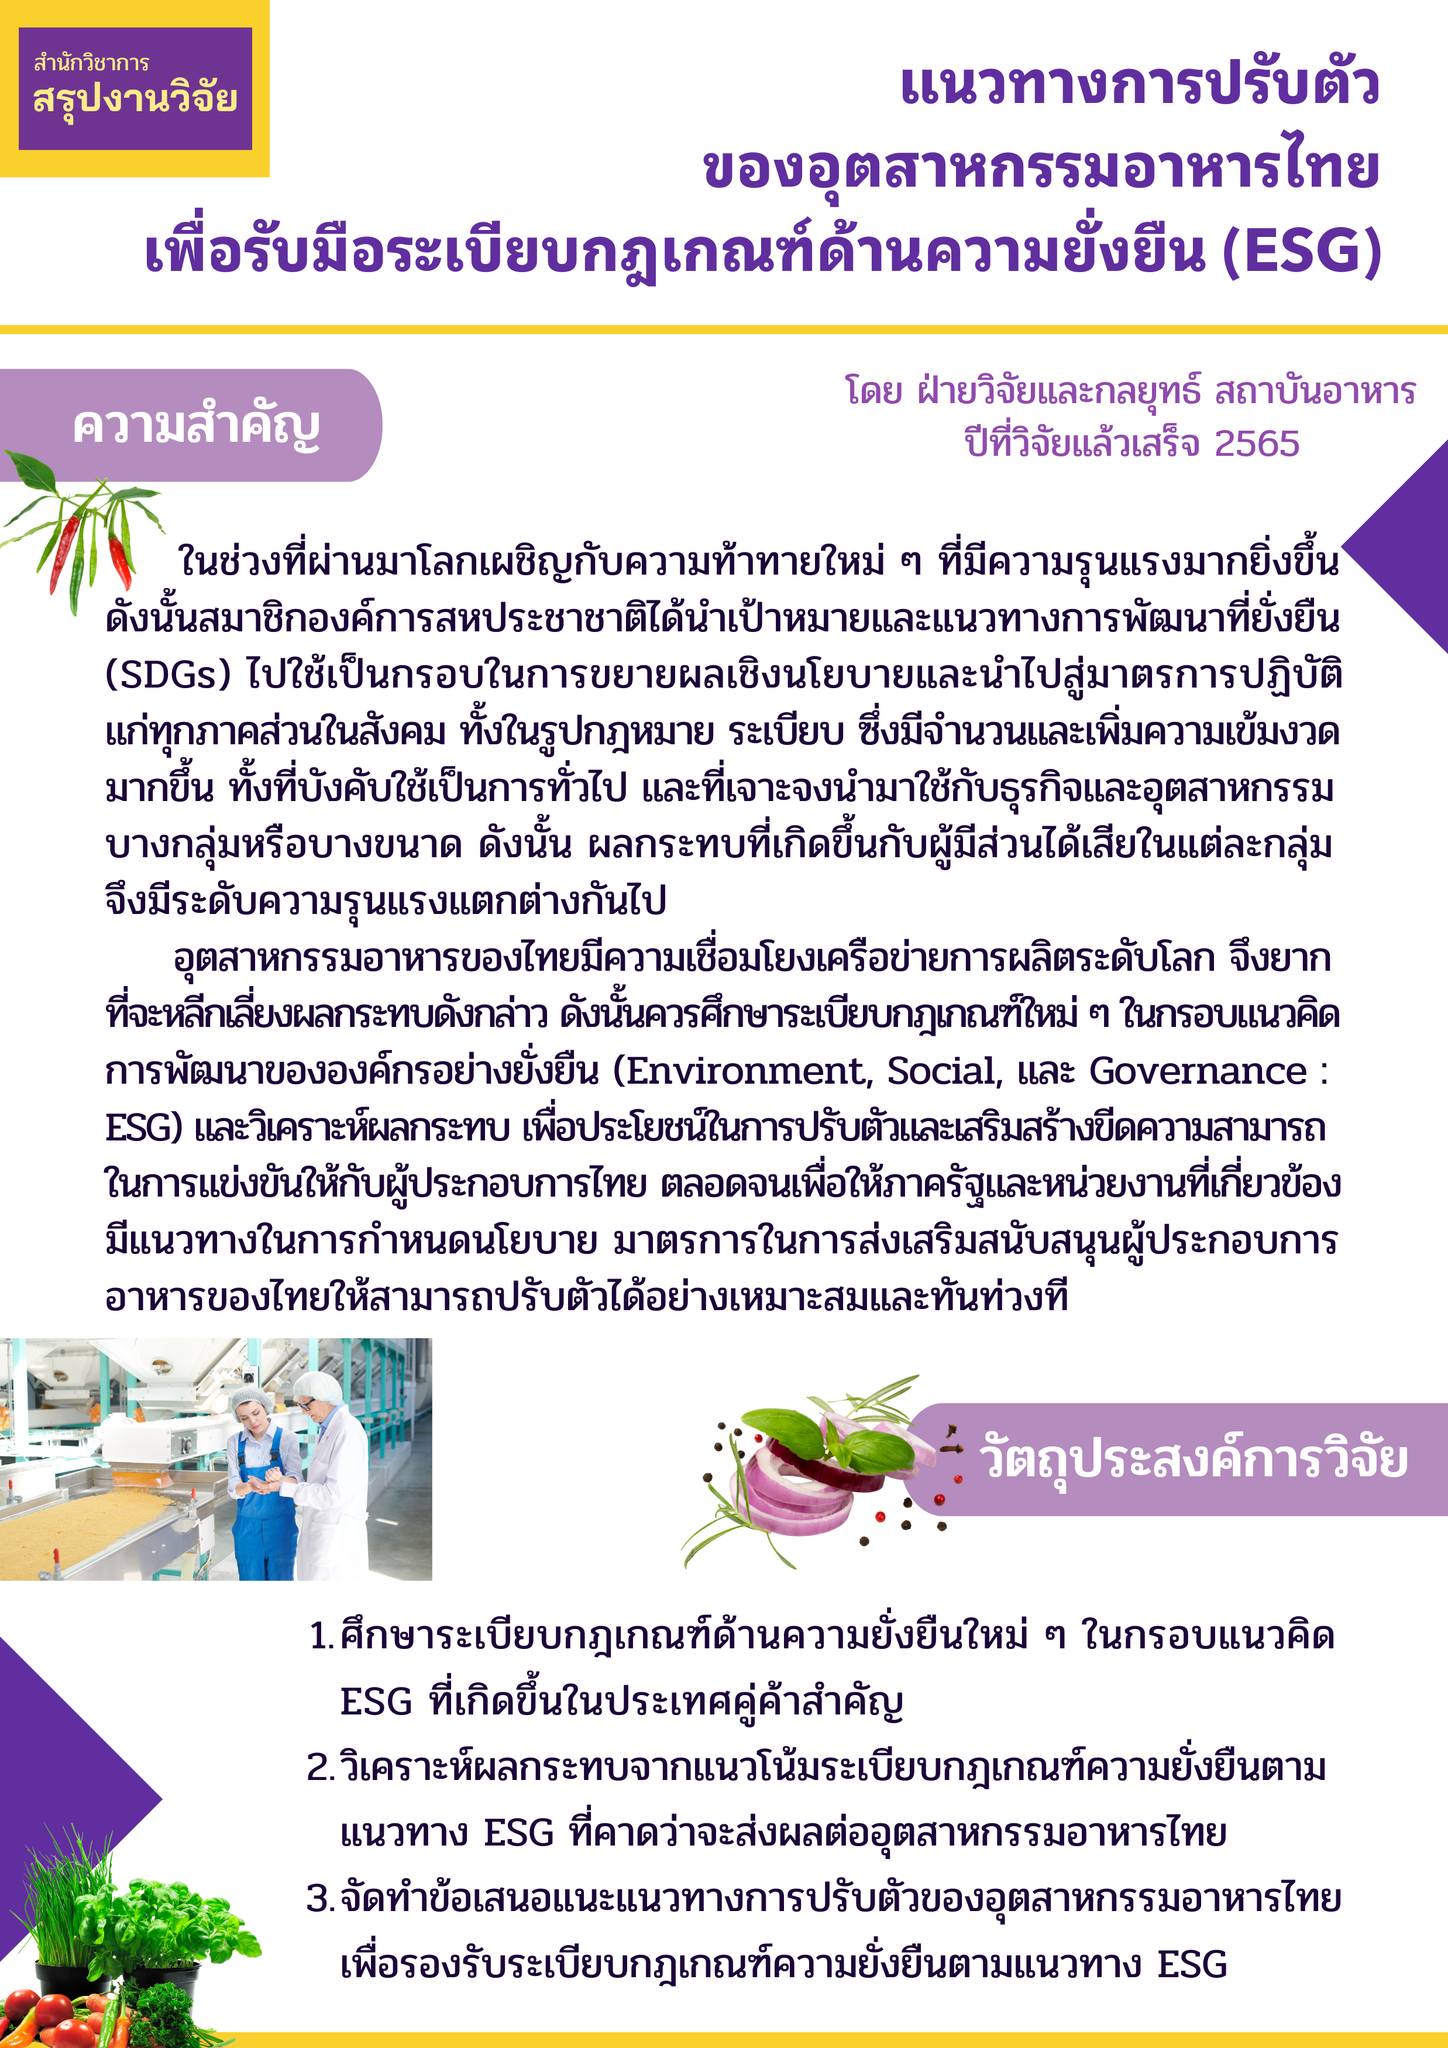 สรุปงานวิจัย “แนวทางการปรับตัวของอุตสาหกรรมอาหารไทย เพื่อรับมือระเบียบกฎเกณฑ์ด้านความยั่งยืน (ESG)"